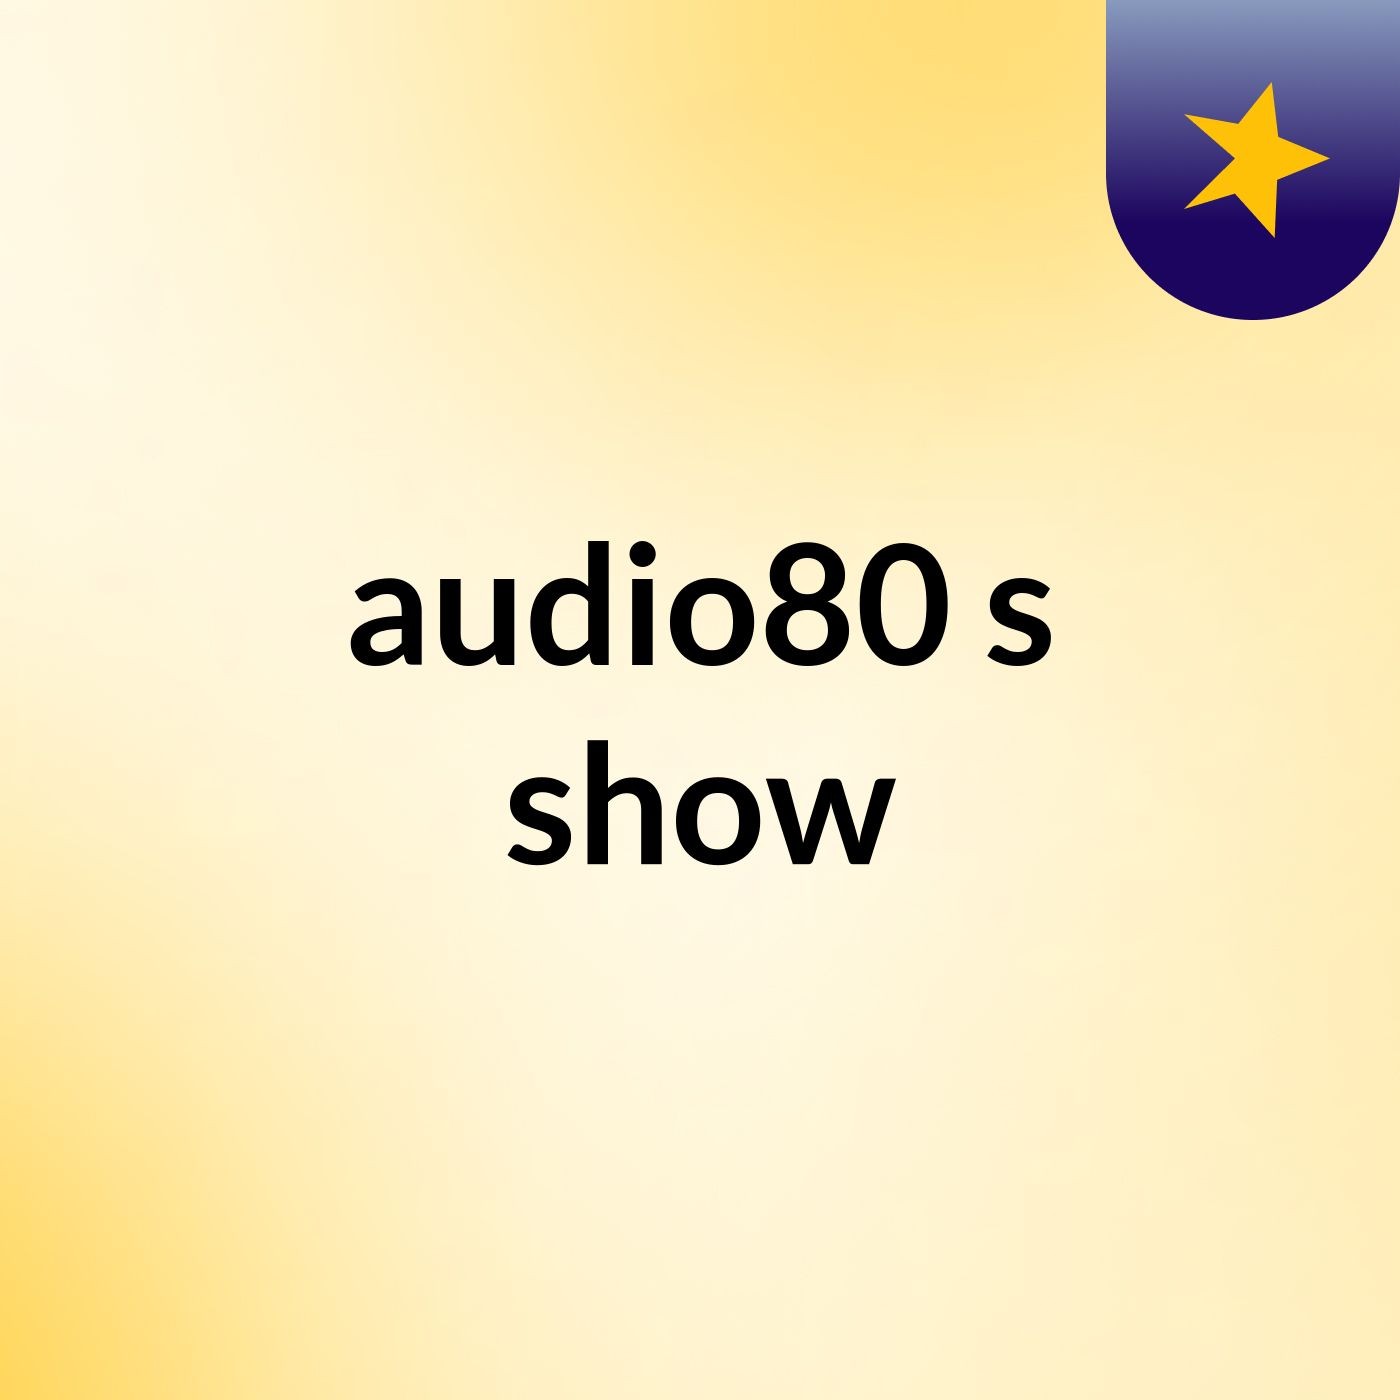 audio80's show